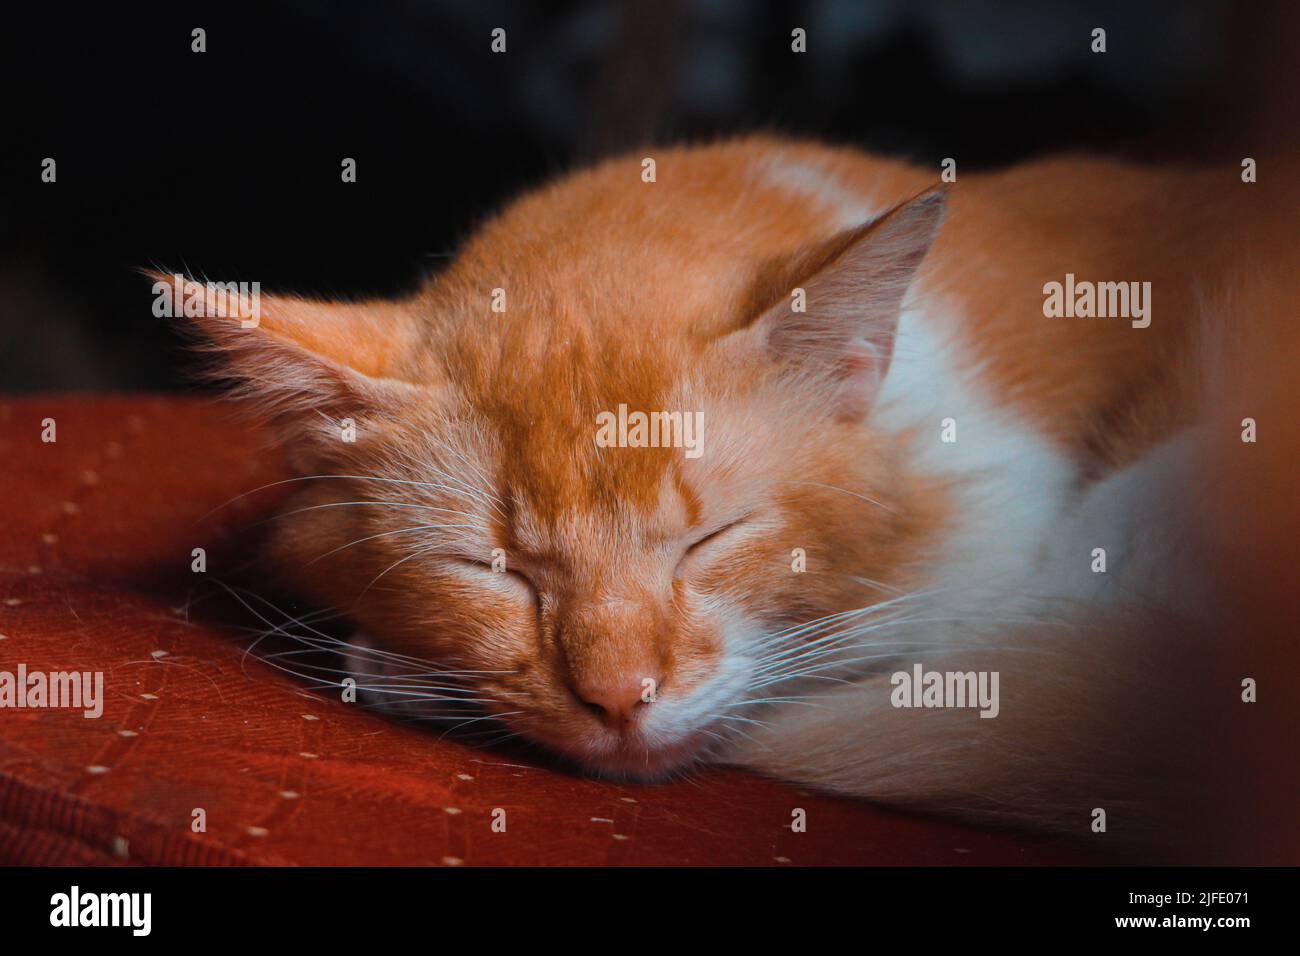 Niedliche kleine braune und weiße Katze schläft auf einem roten Luxus-Stuhl Stockfoto